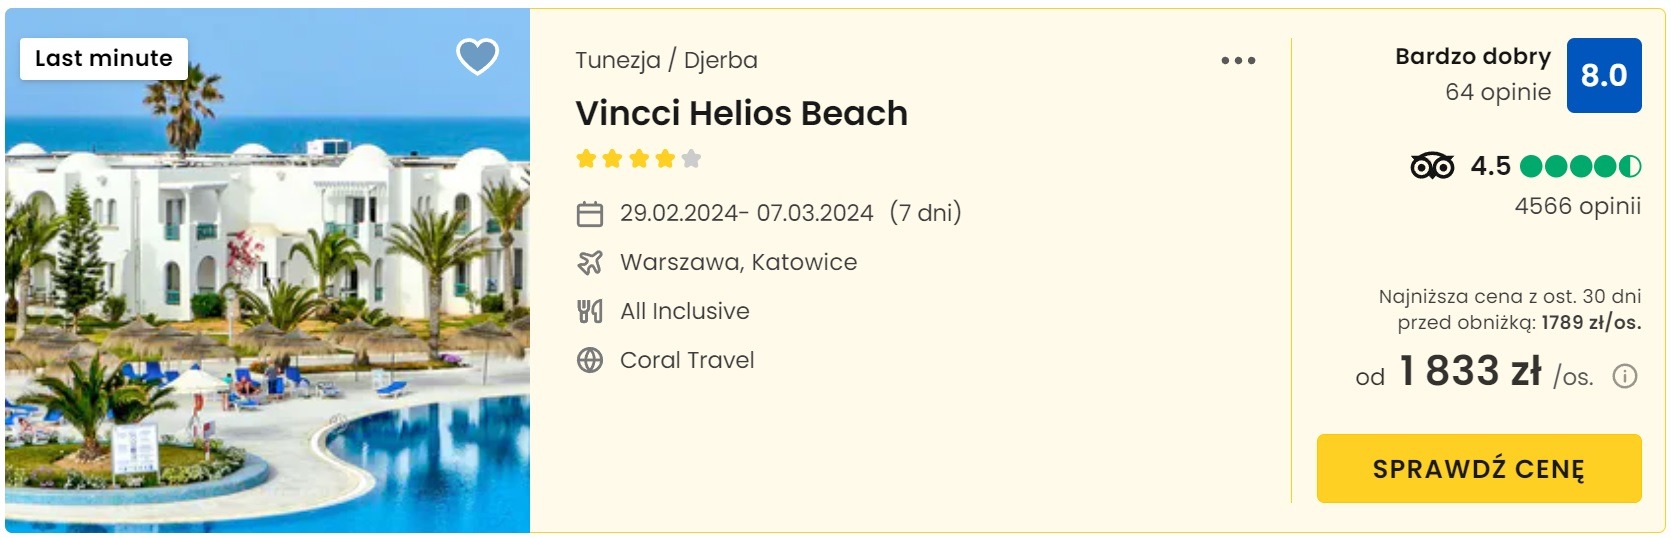 Vincci Helios Beach 29.02-07.03.2024